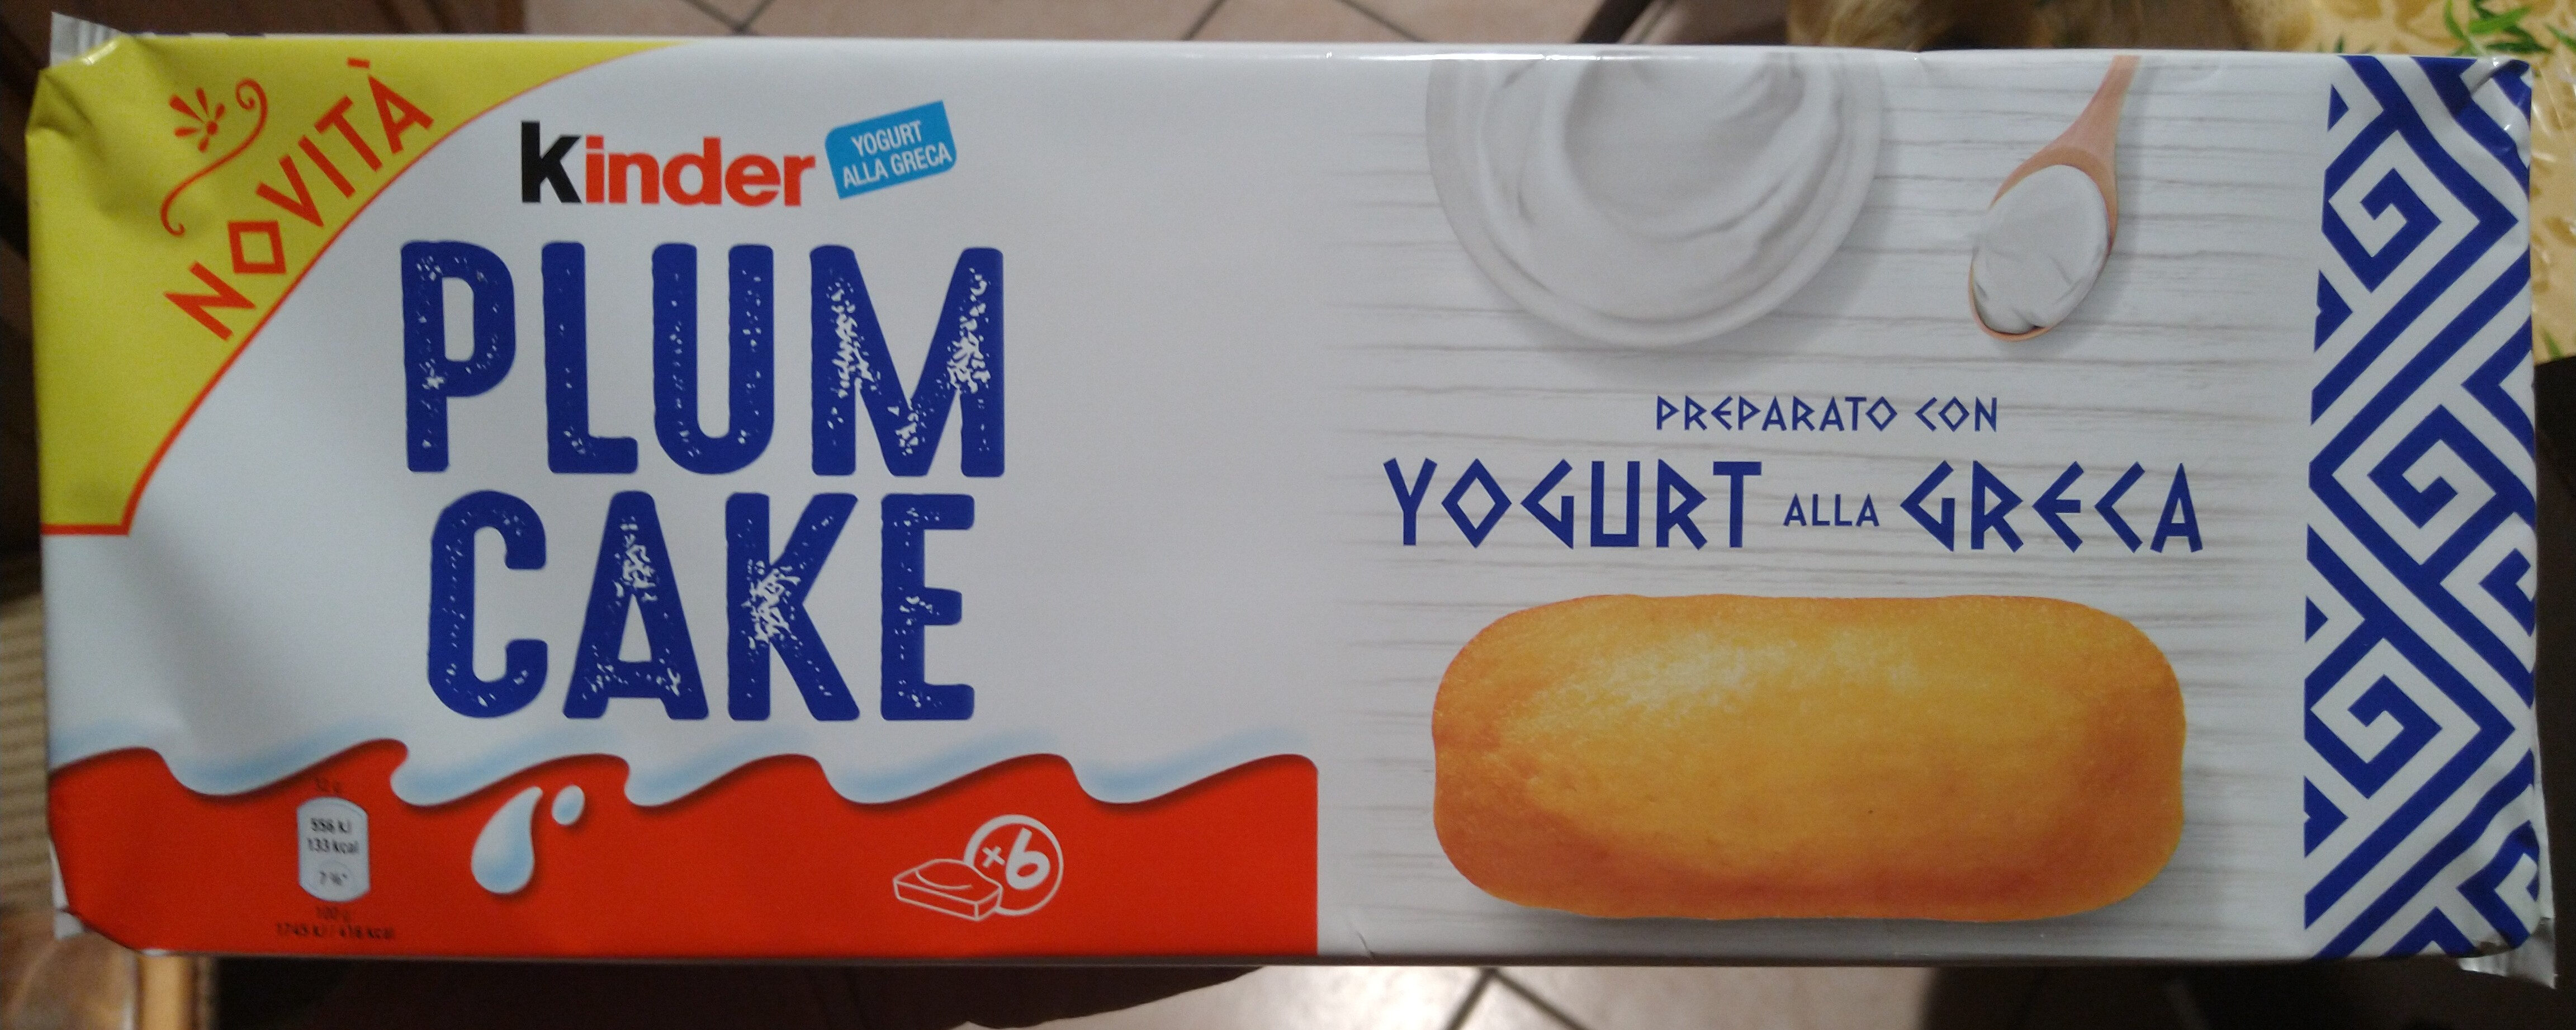 Plum cake preparato con yogurt alla greca - Product - it